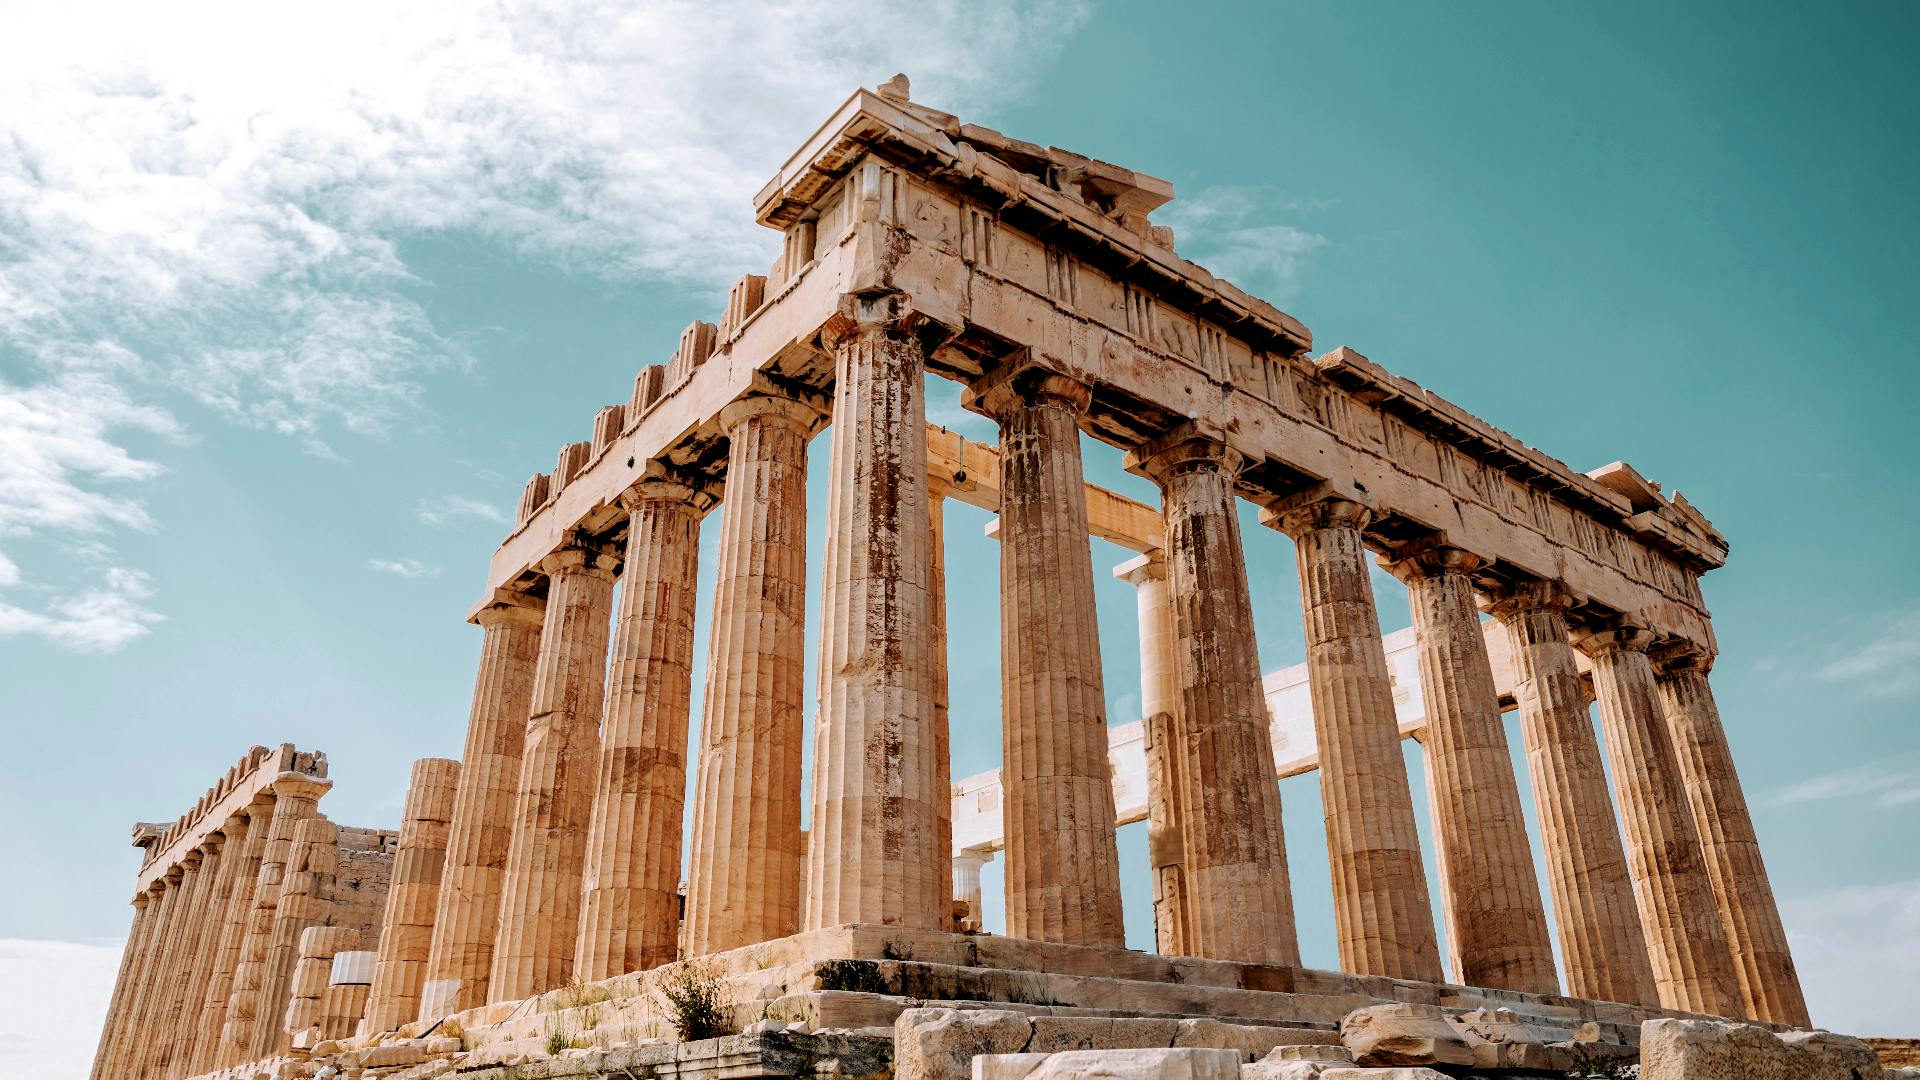 Zelfgeleide ontdekkingswandeling in verborgen juweeltjes en geschiedenis van Athene